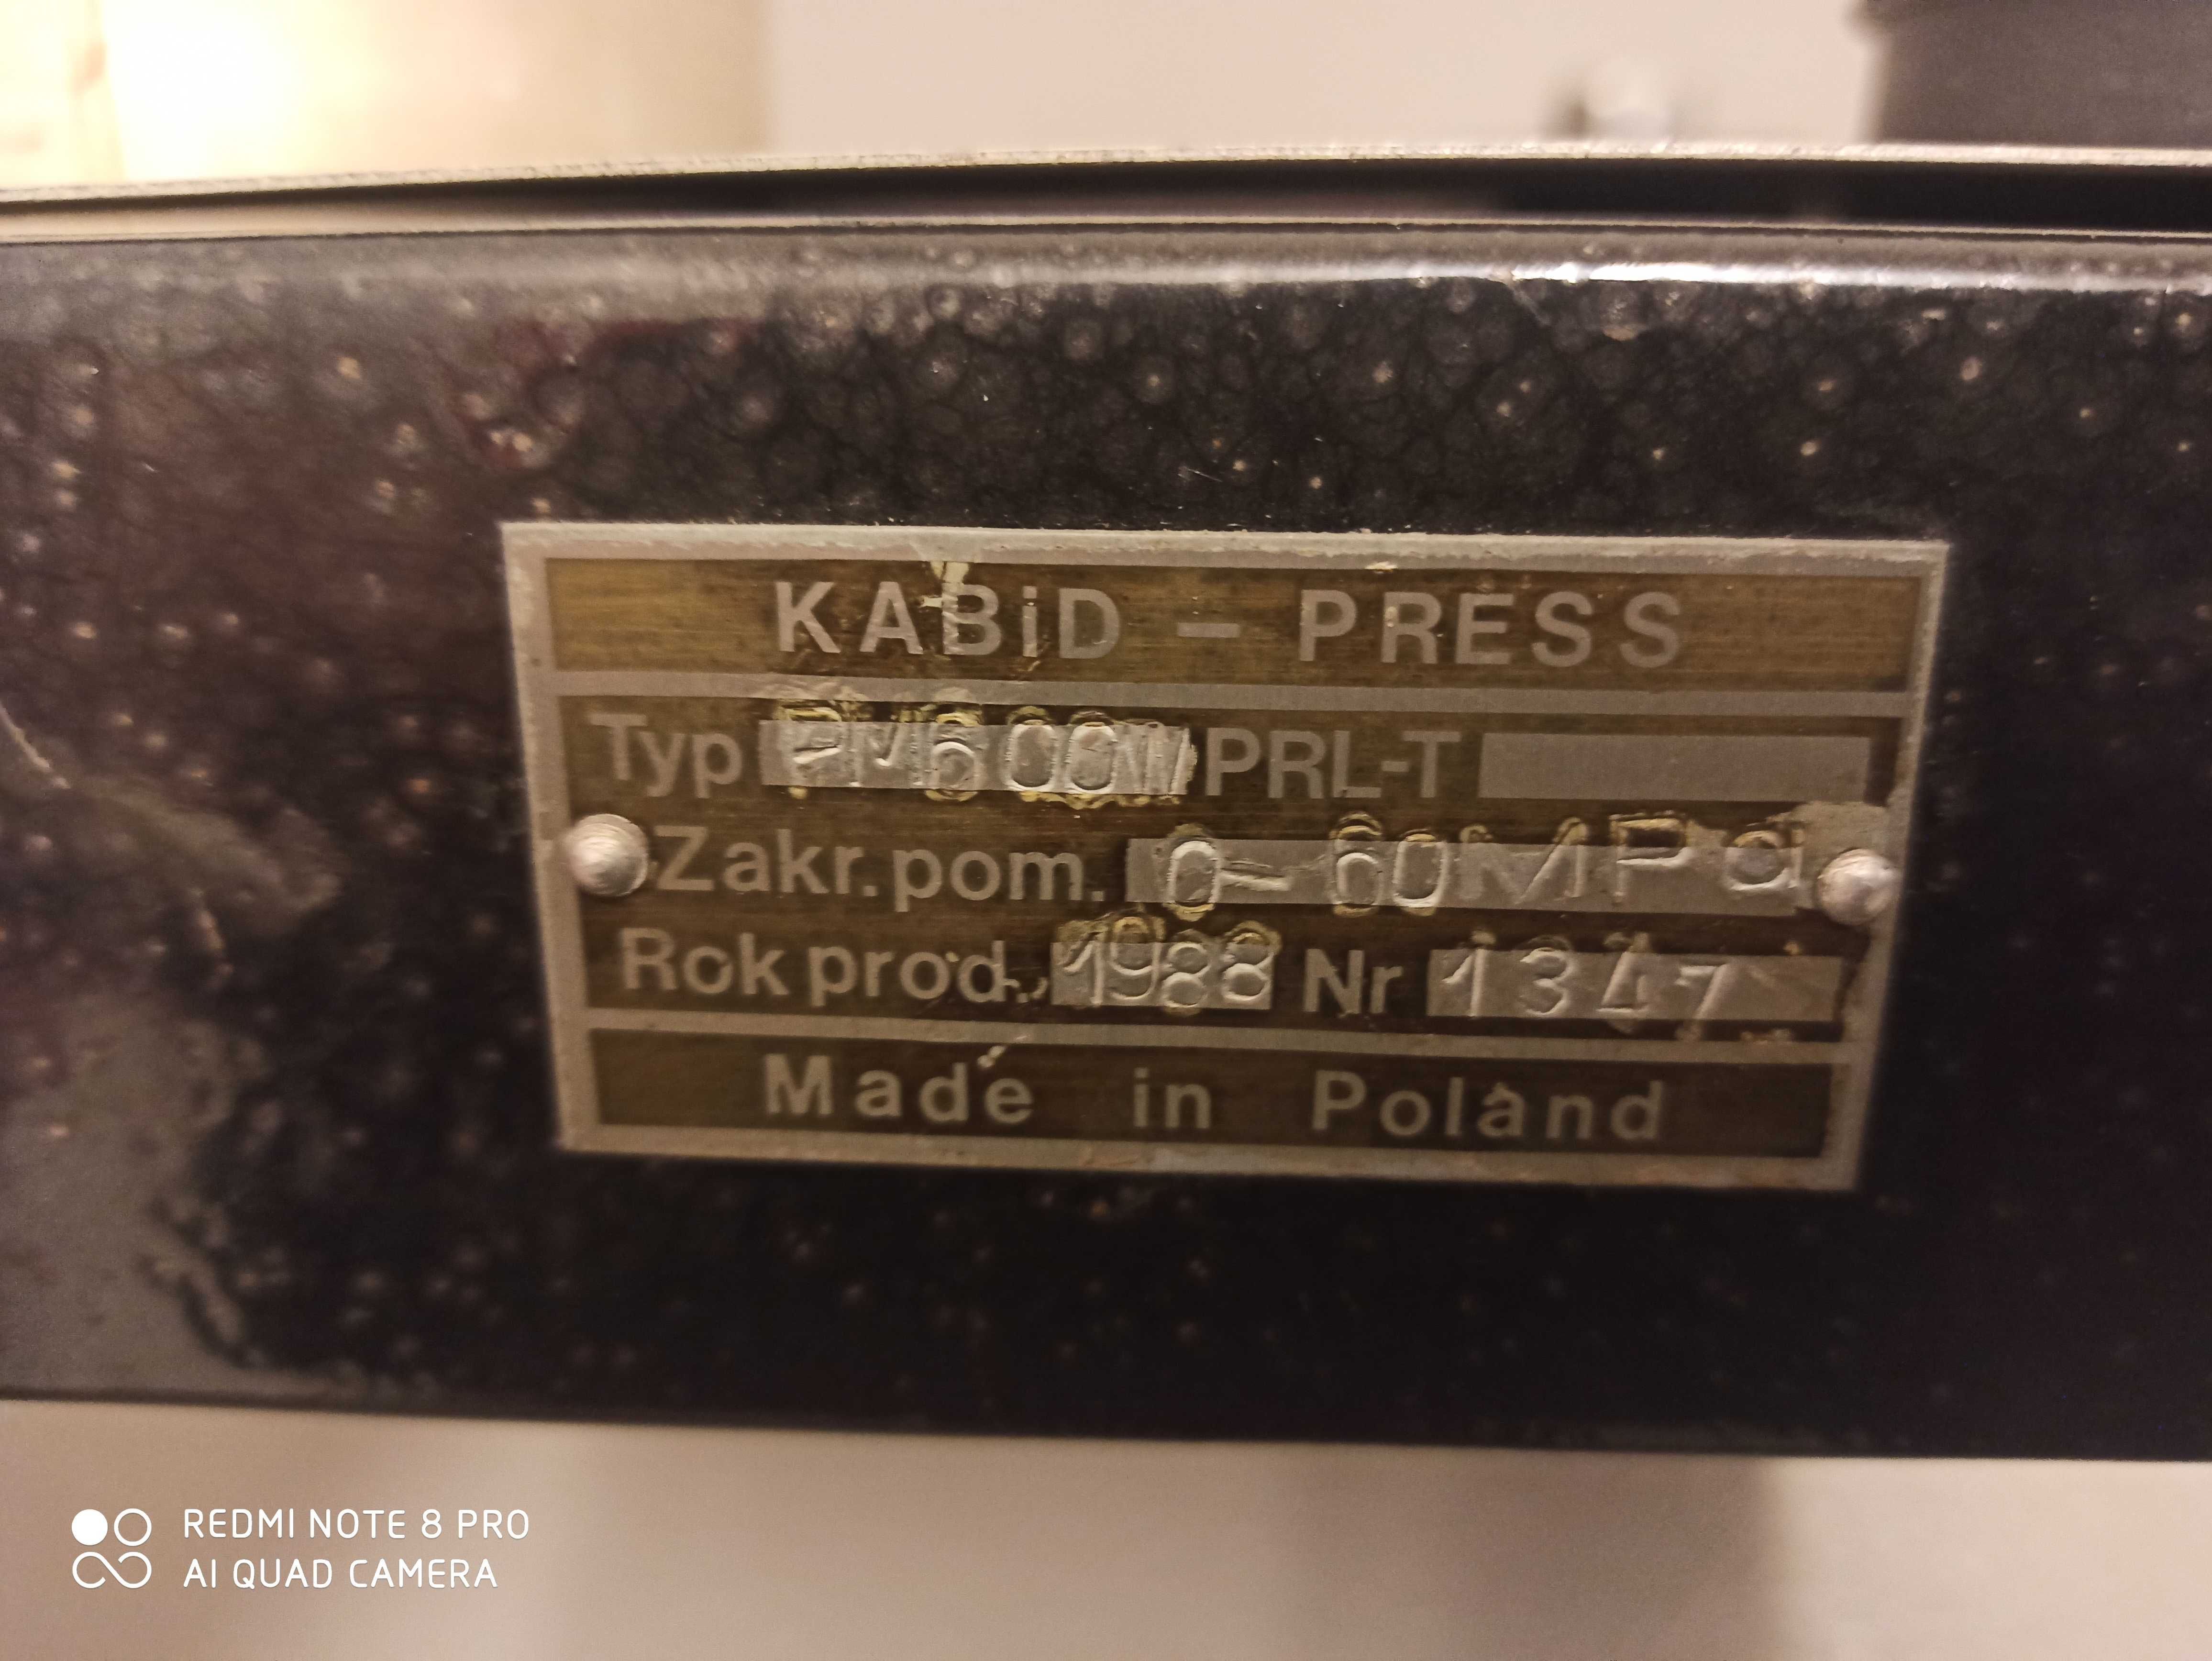 Kabid press PM 600 W wzorcowanie manometrów